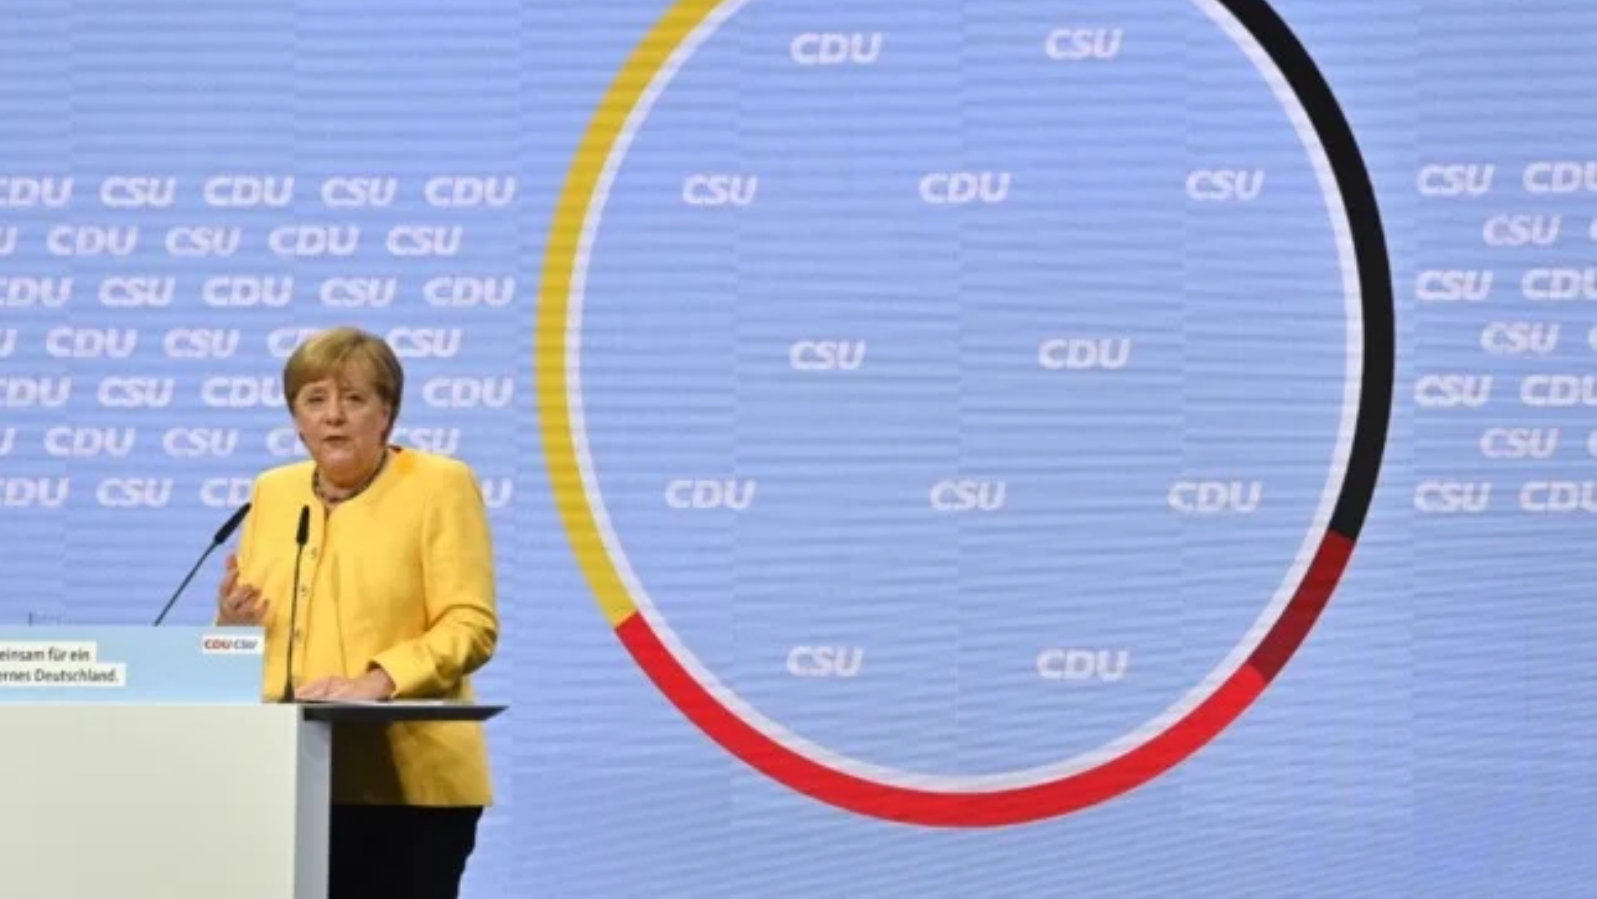 المستشارة الألمانية أنغيلا ميركل تلقي خطابها خلال مسيرة حملة الانتخابات العامة المقرر إجراؤها في 26 سبتمبر 2021، في برلينر تيمبودروم في برلين. بتاريخ 21 آب/ أغسطس 2021.